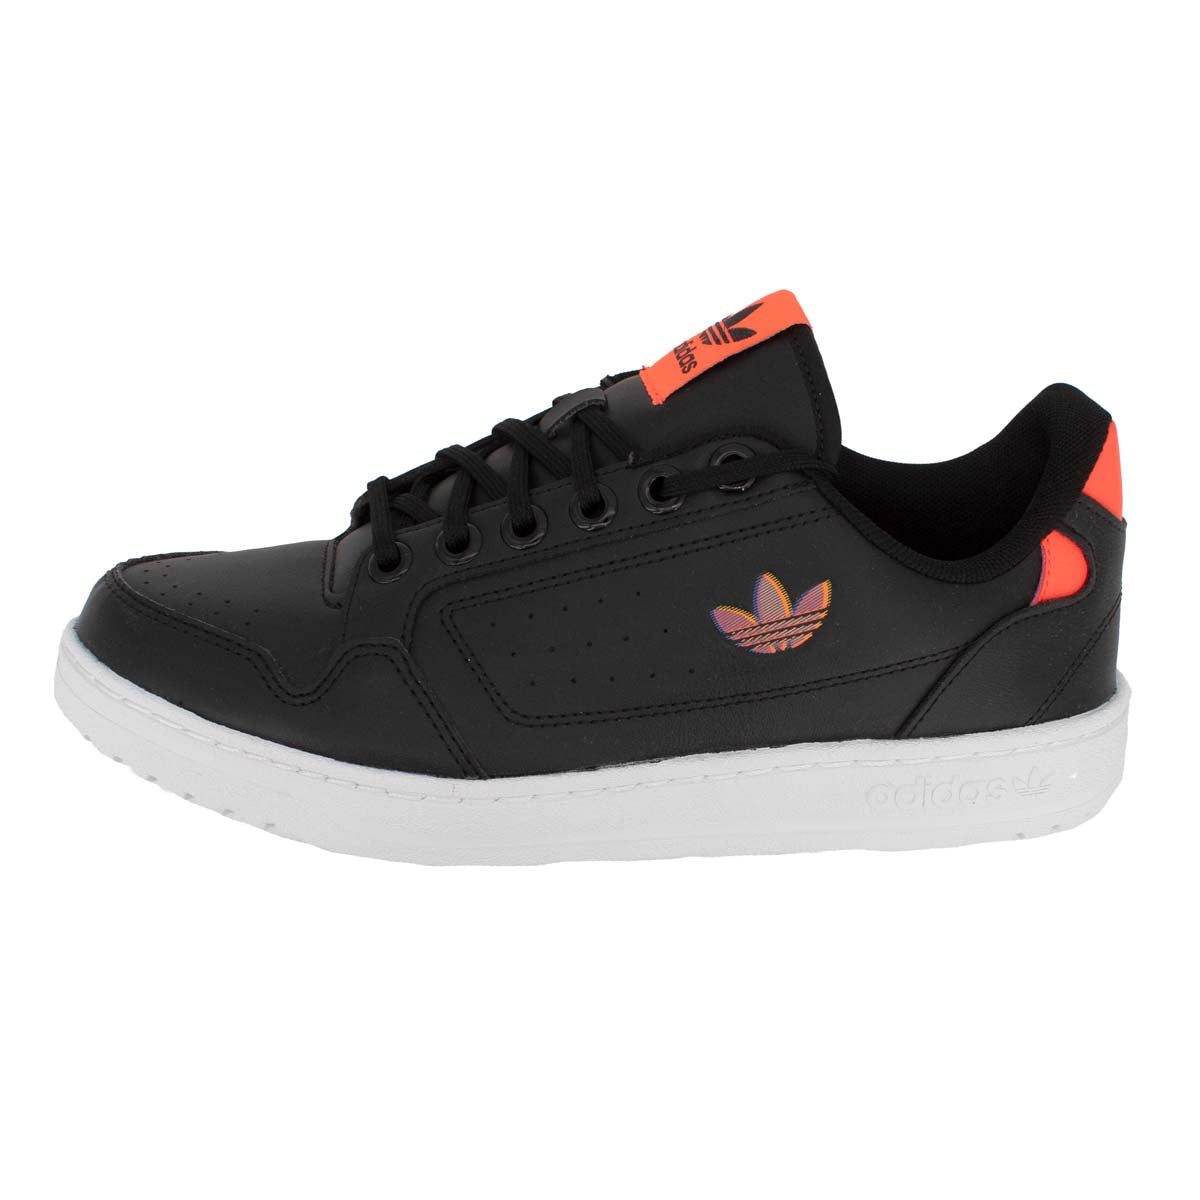 Adidas Originals Ny 90 Schuhe Herren Sneaker H02171